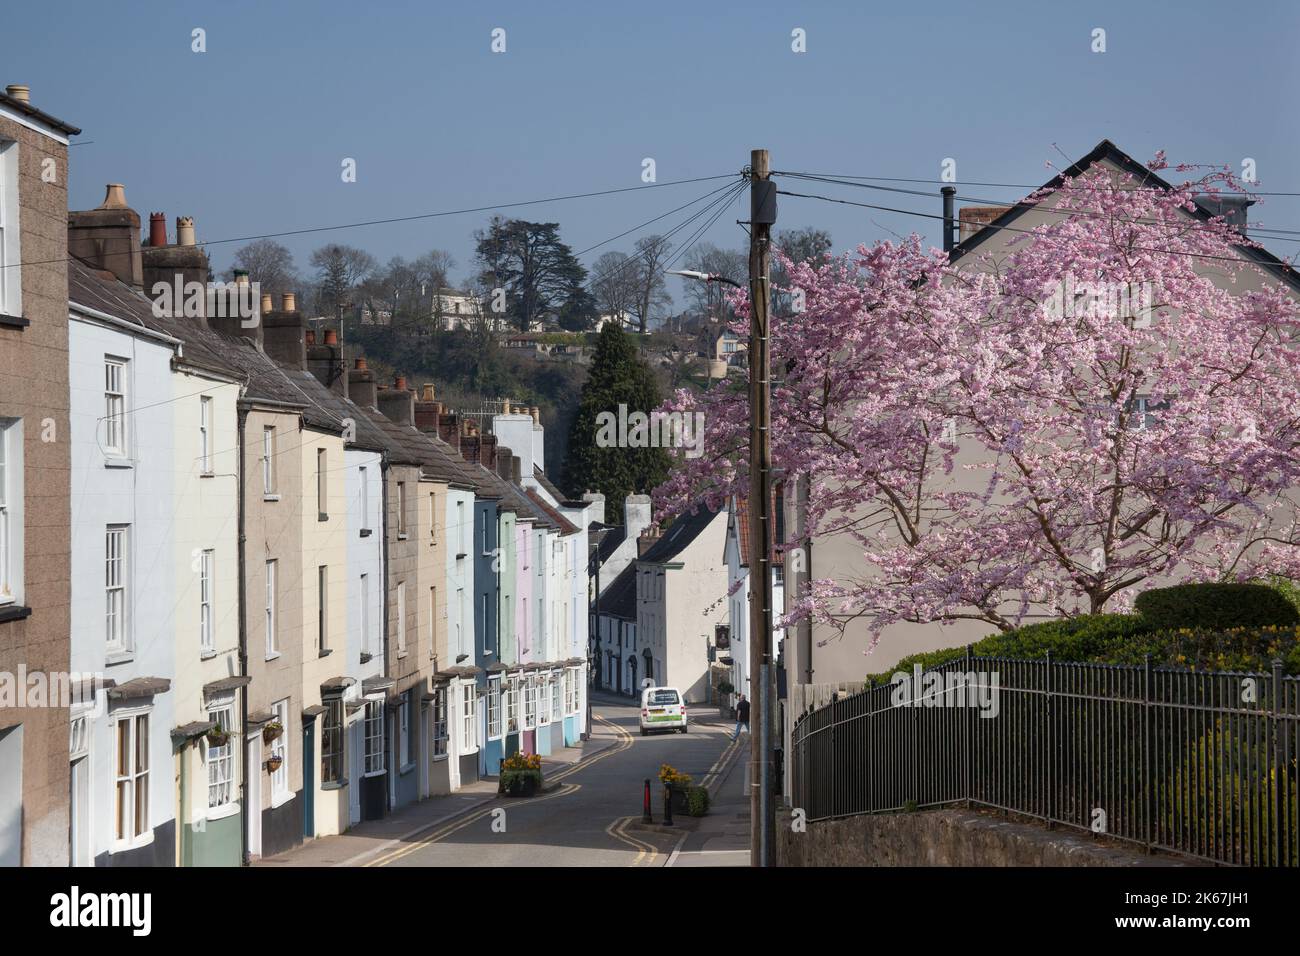 Una hilera de casas en Chepstow, Monmouthshire, Gales en el Reino Unido Foto de stock